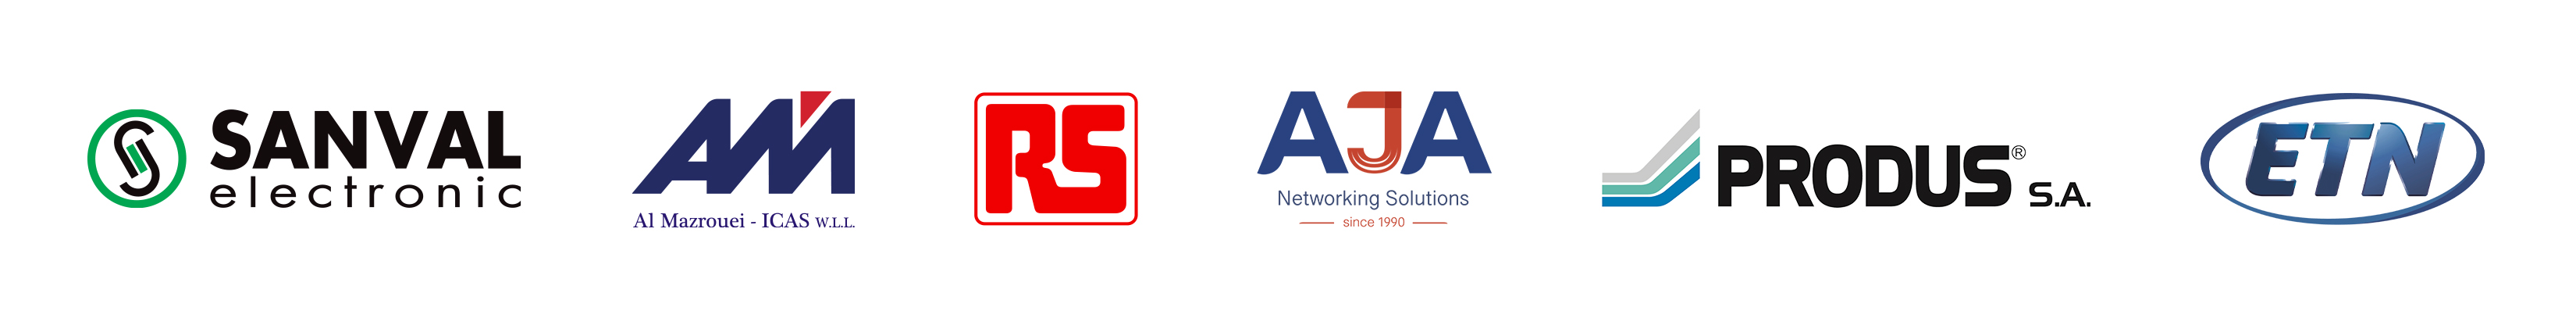 Sanval Electronic, AL MAZROUEI, RS Components, AJA Networking, PRODUS & ETN商标